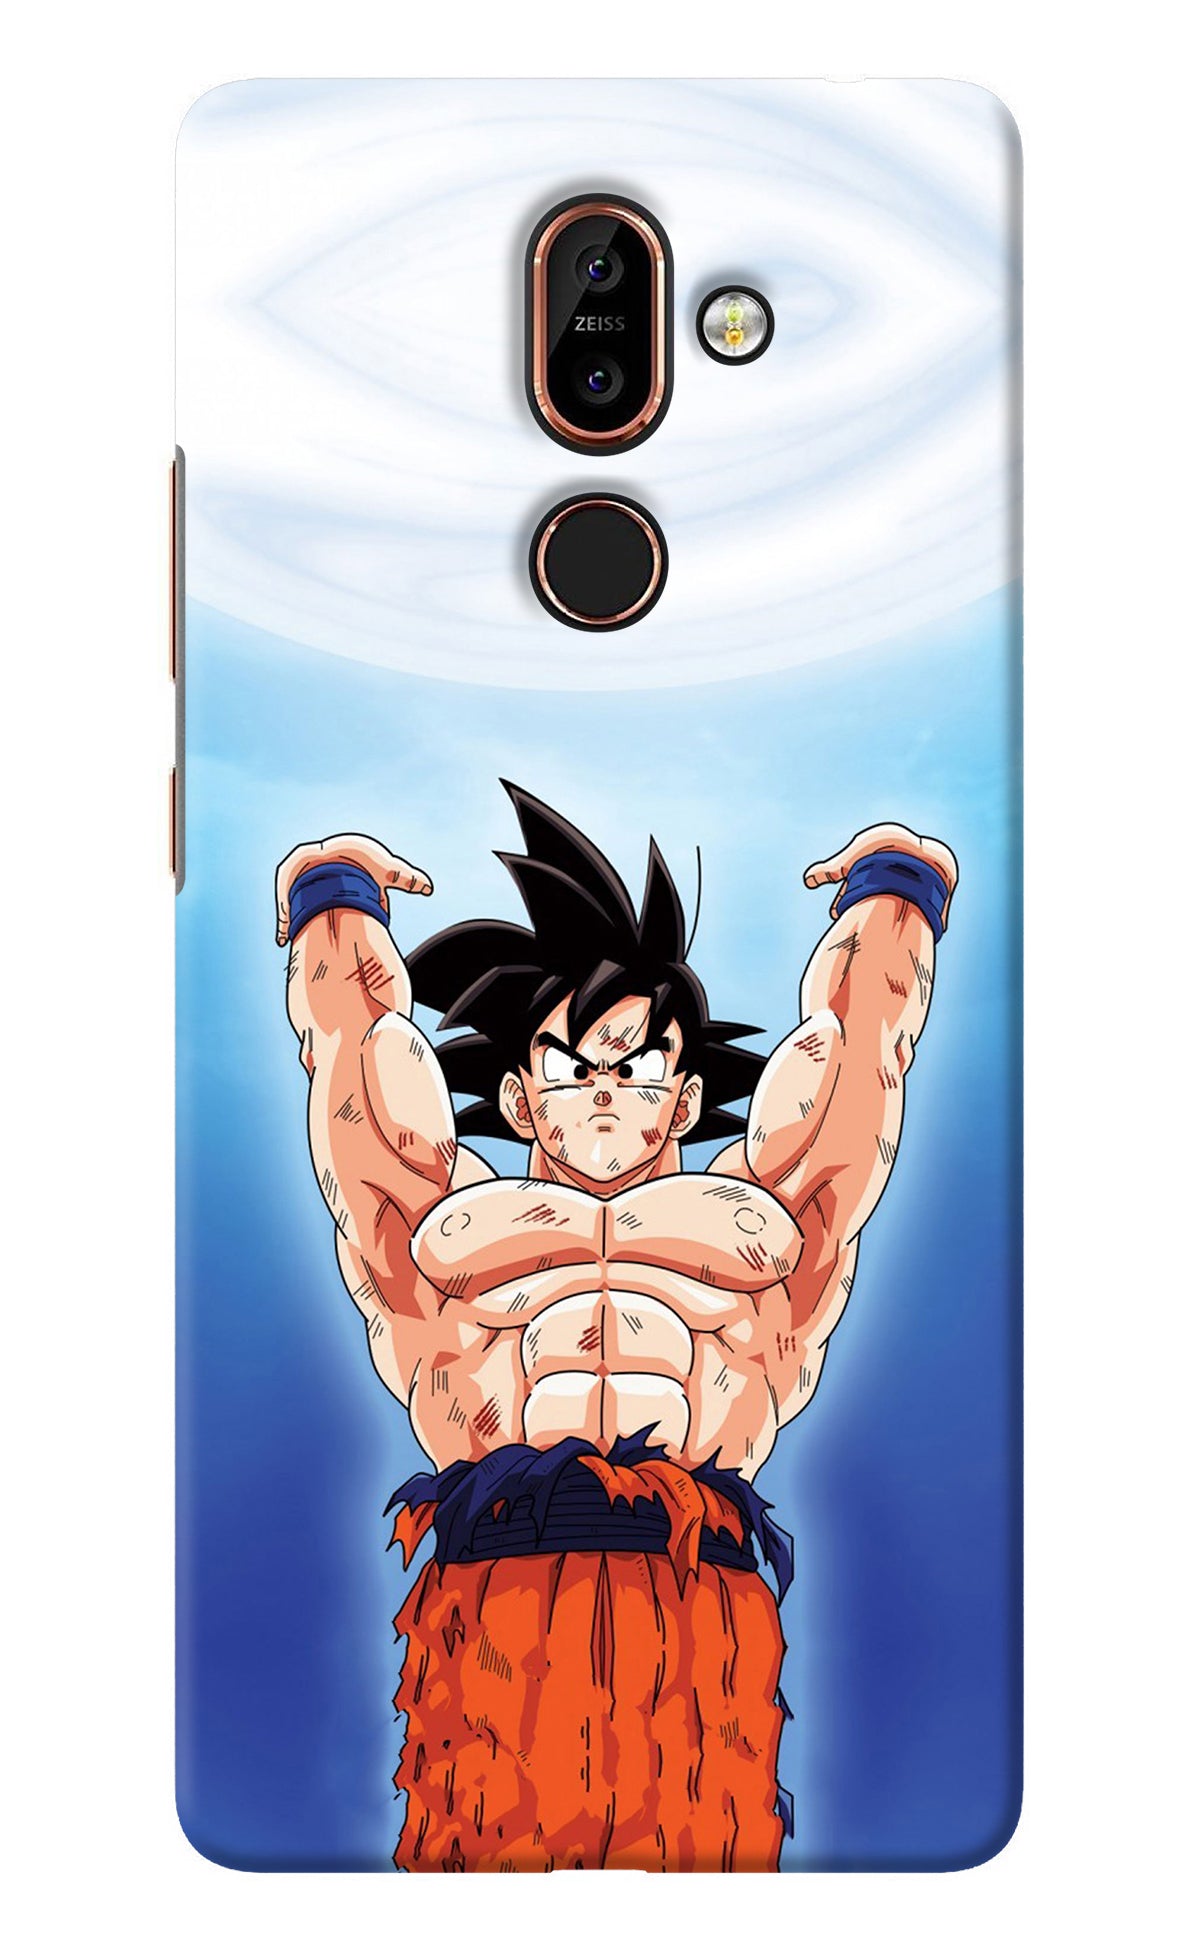 Goku Power Nokia 7 Plus Back Cover